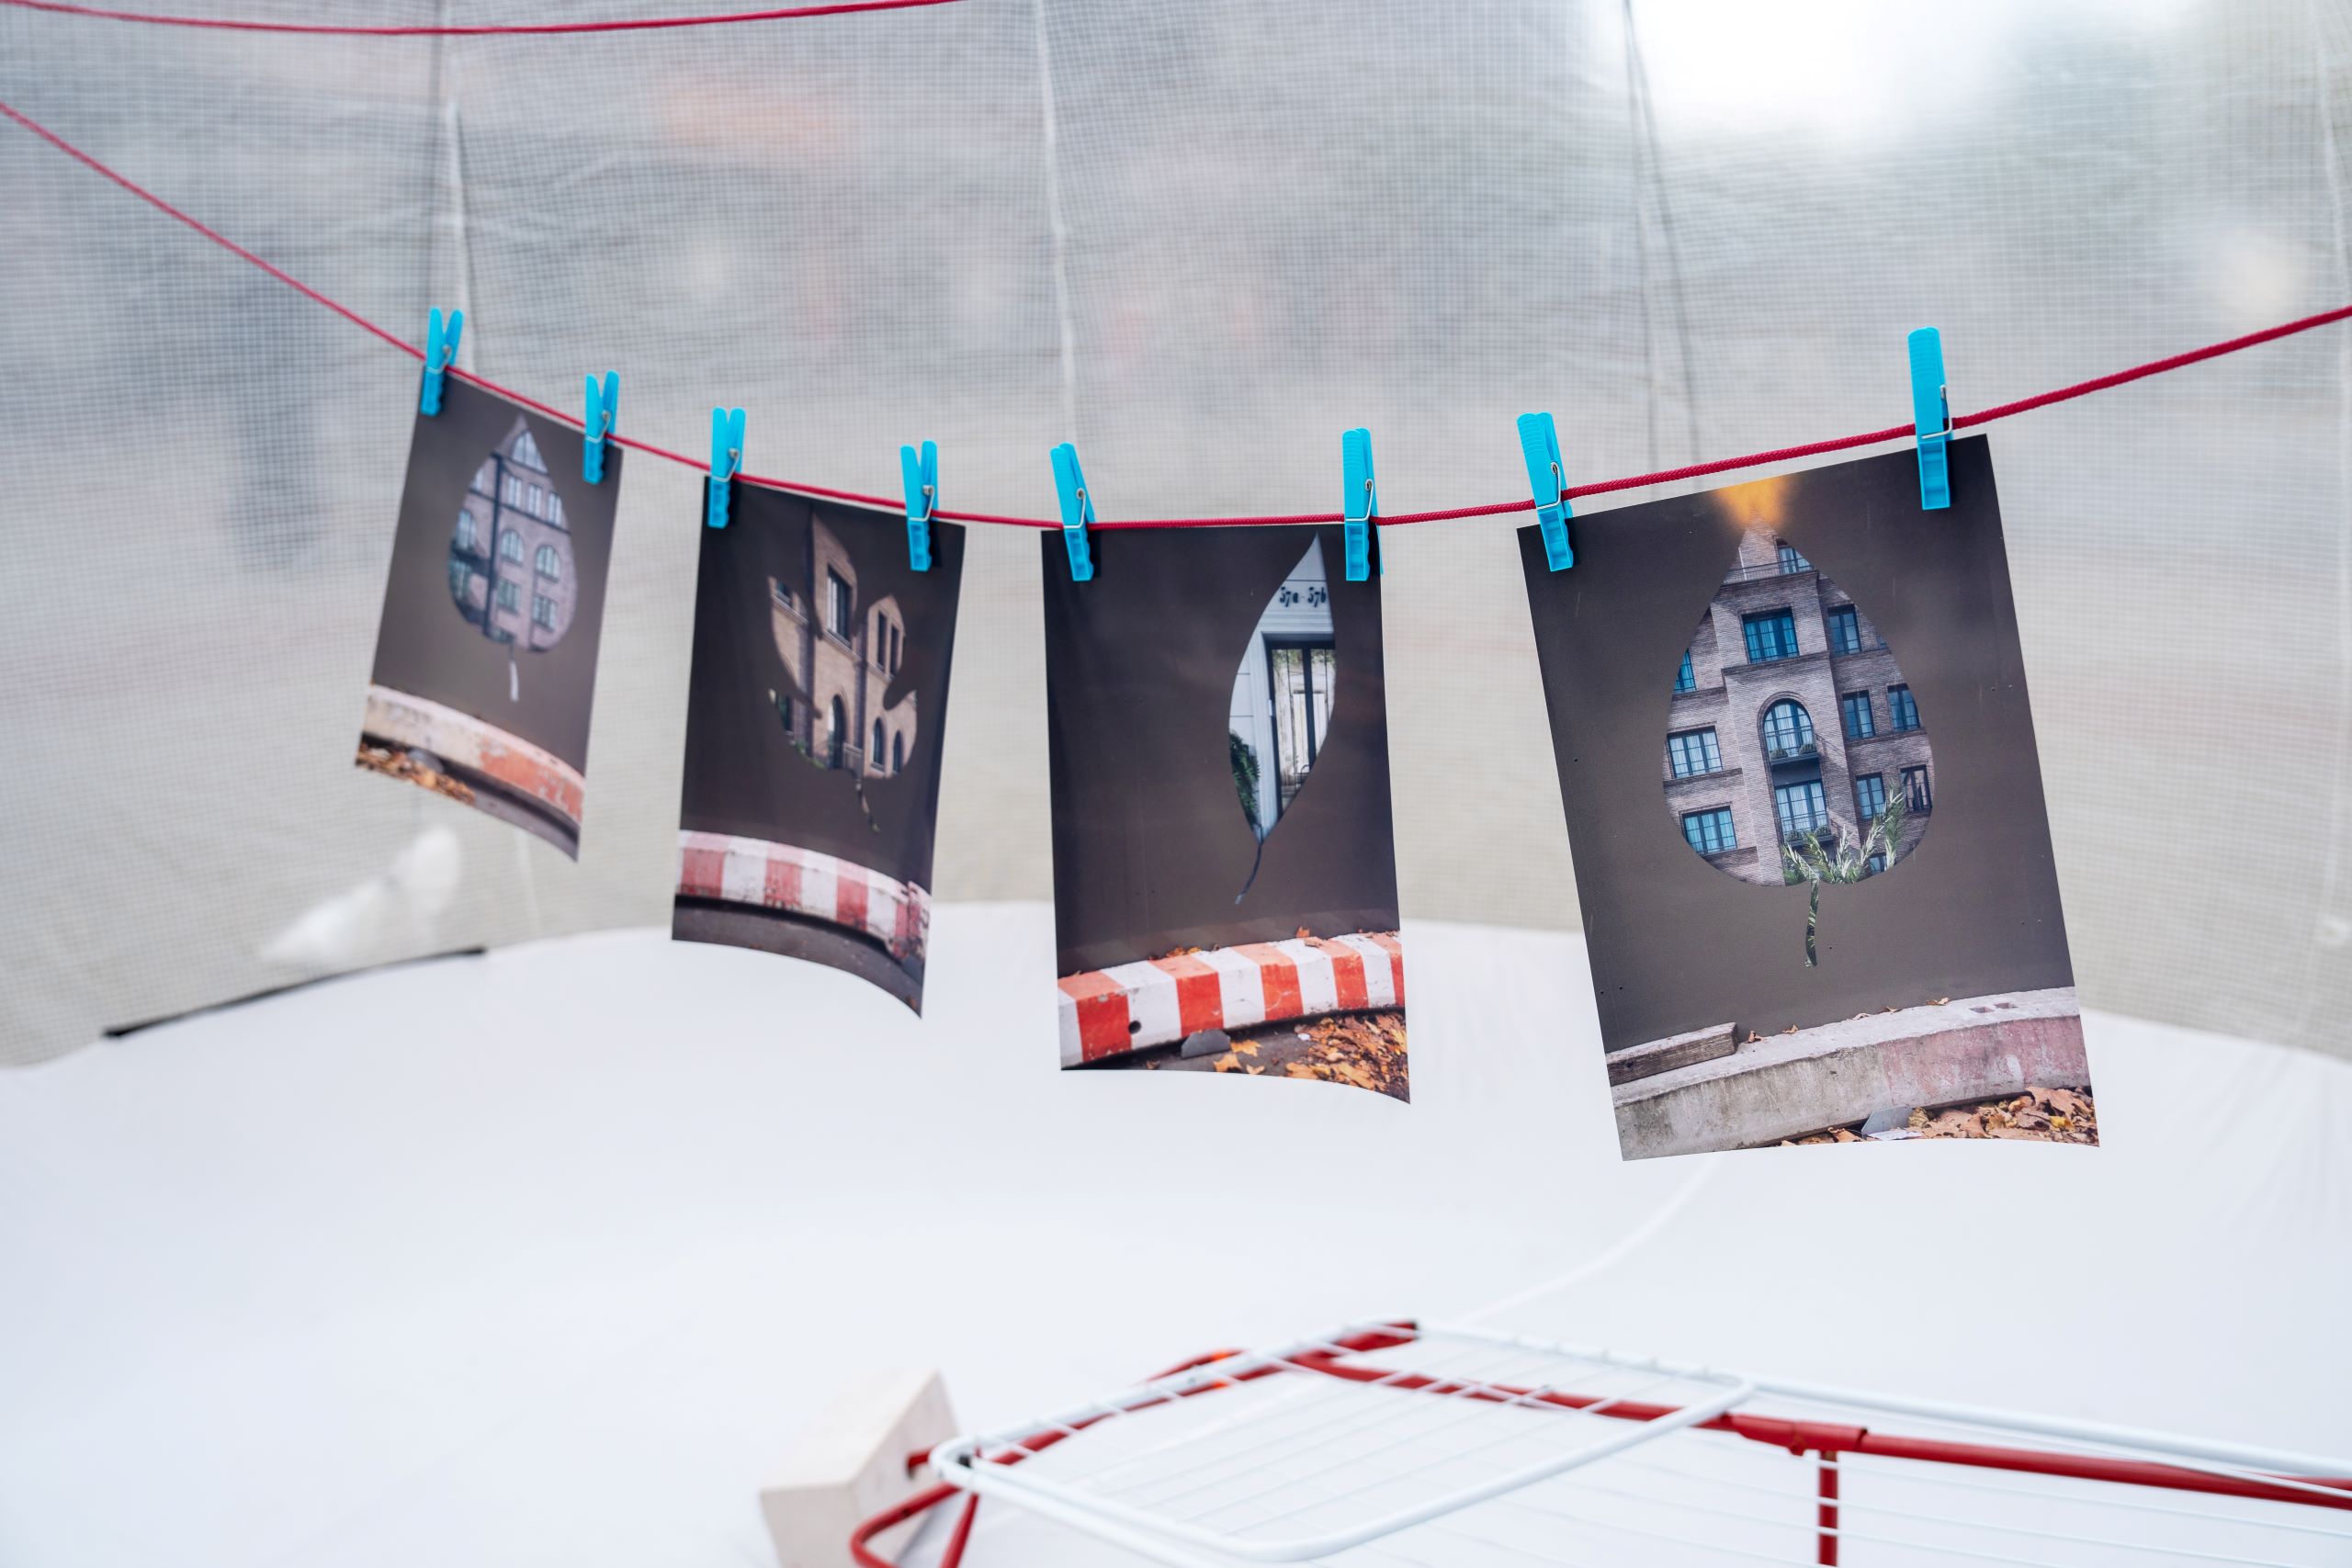 Installation "Immobilienblase" von Anton Steenbock mit Fotografien, Besen und Wäscheständer